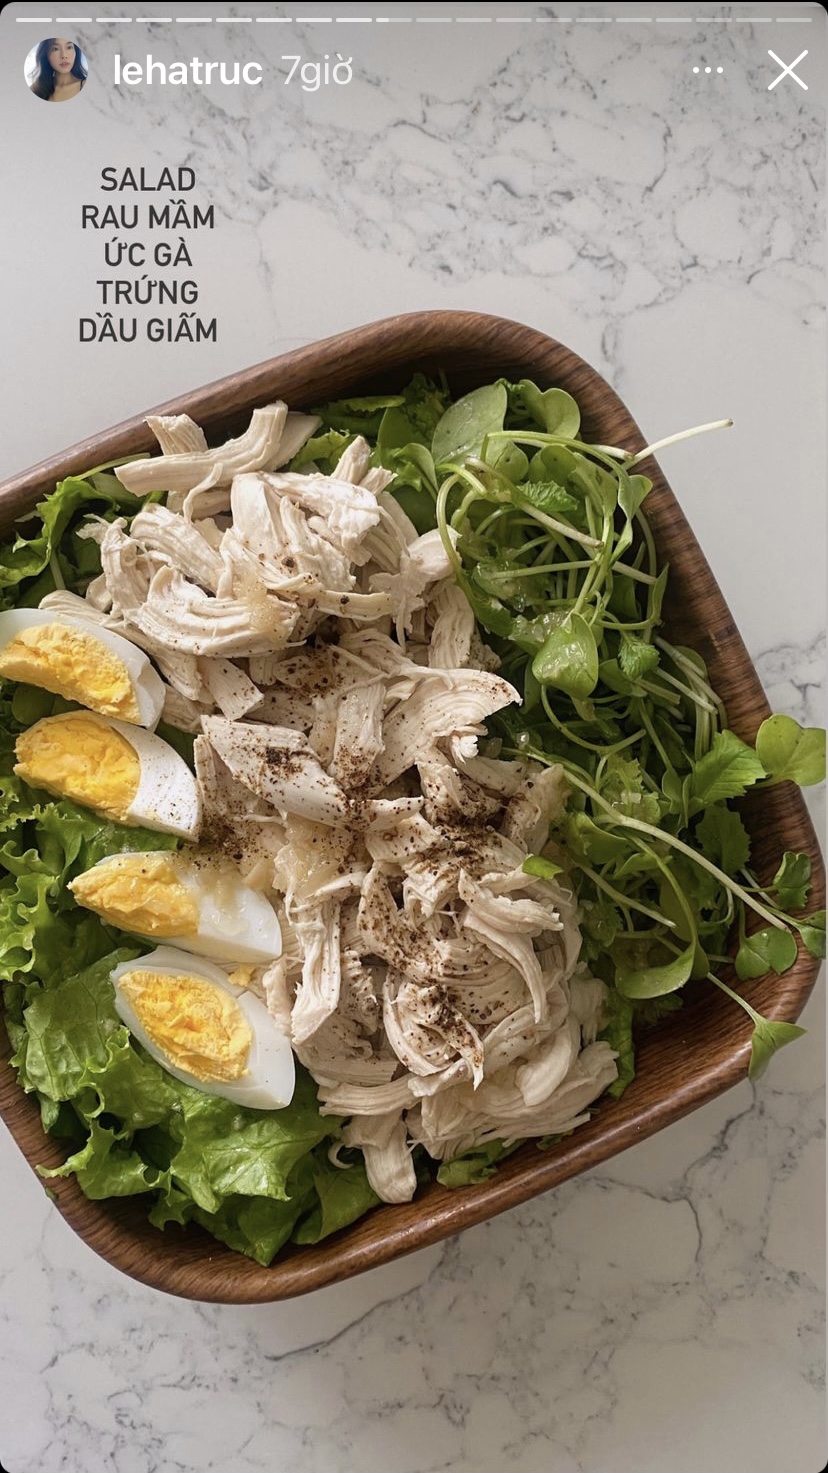 Chỉ cần vào bếp chuẩn vị một chút là travel blogger Hà Trúc đã có một đĩa salad rau mầm, ức gà, trứng và dầu giấm thanh đạm mà không lo tăng cân.